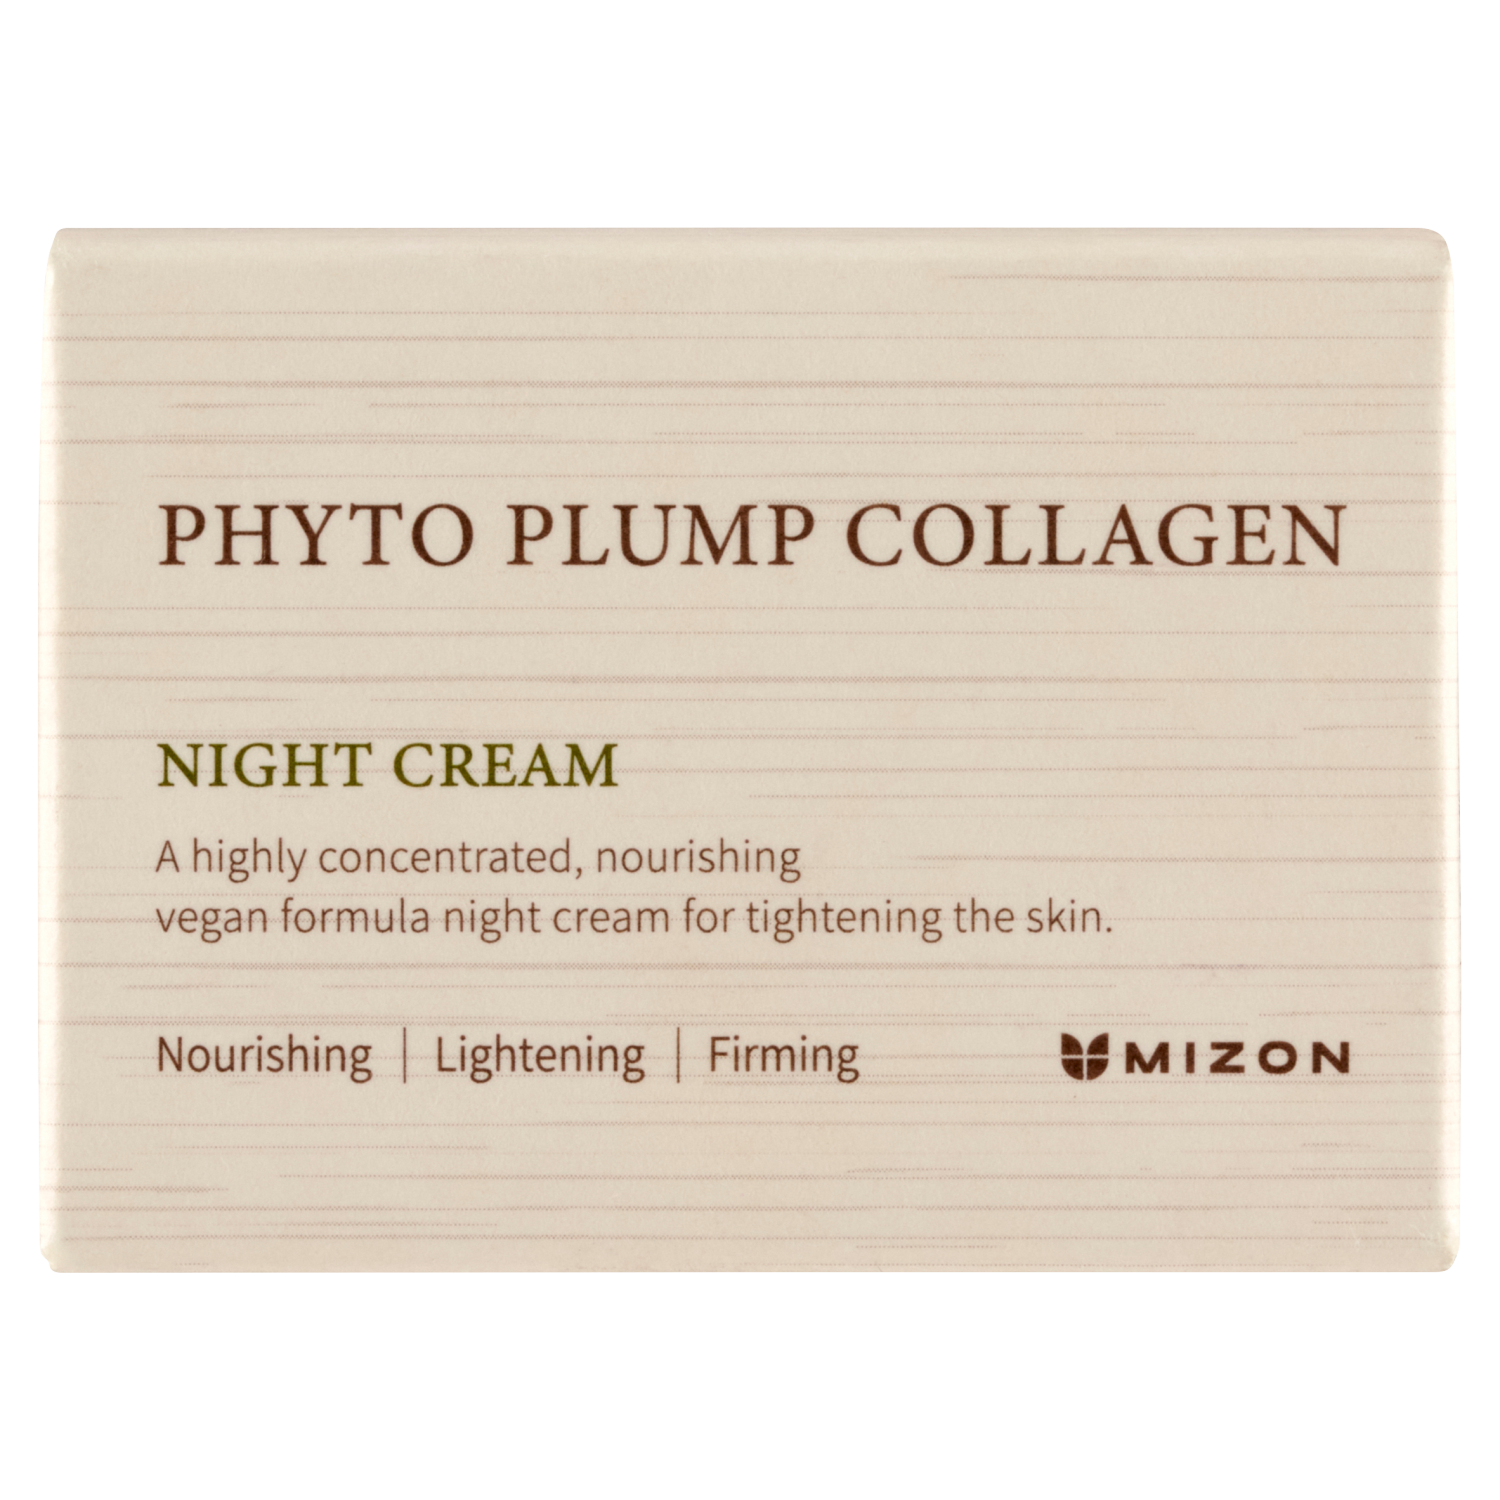 Лифтинг-крем для лица на ночь Mizon Phyto Plump Collagen, 50 мл лифтинг патчи для глаз mizon phyto plump collagen 60 штук